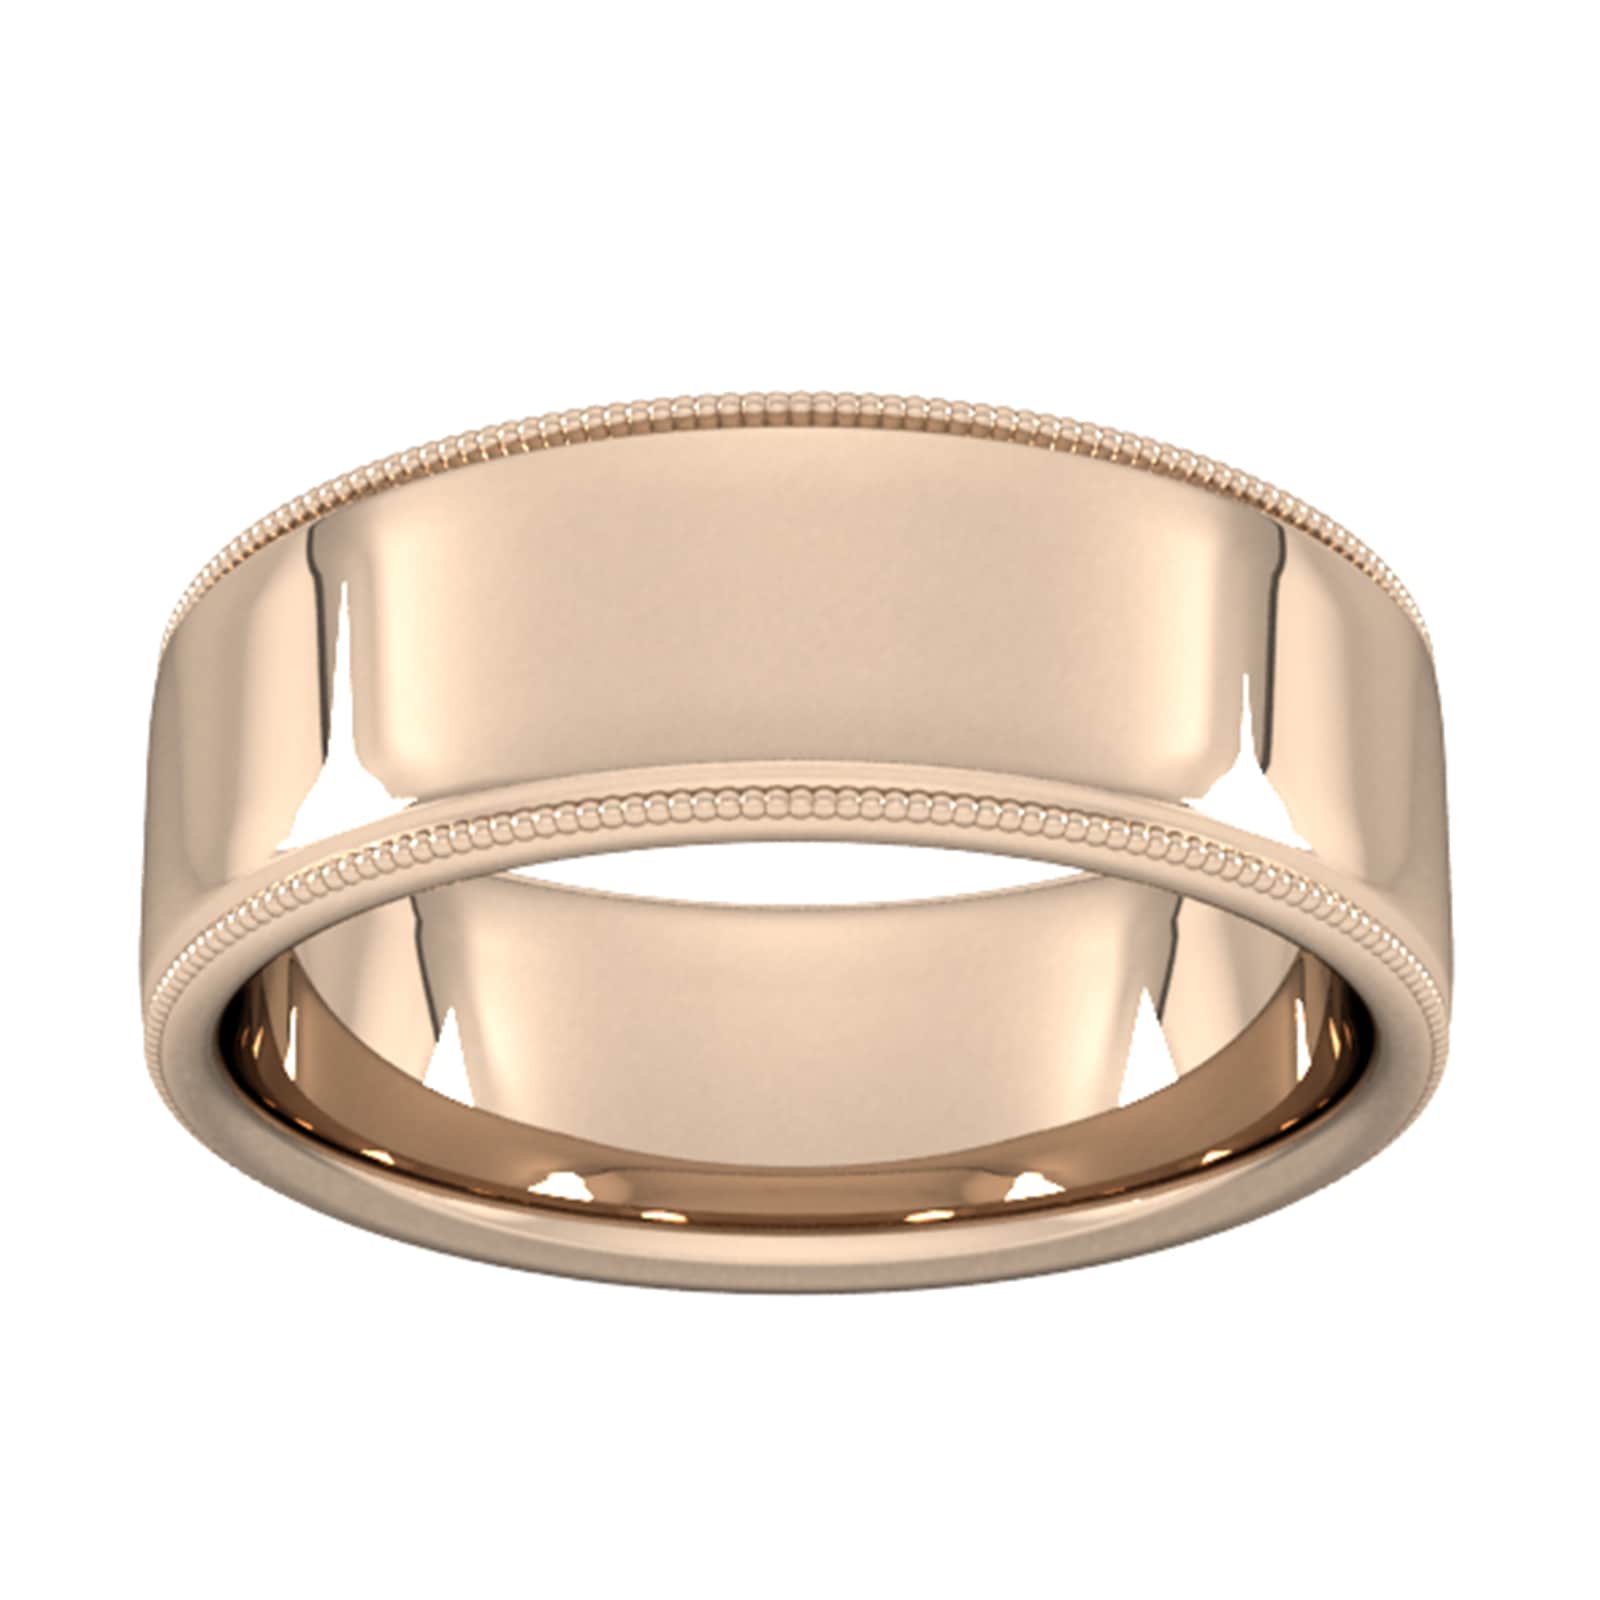 8mm Slight Court Heavy Milgrain Edge Wedding Ring In 9 Carat Rose Gold - Ring Size L